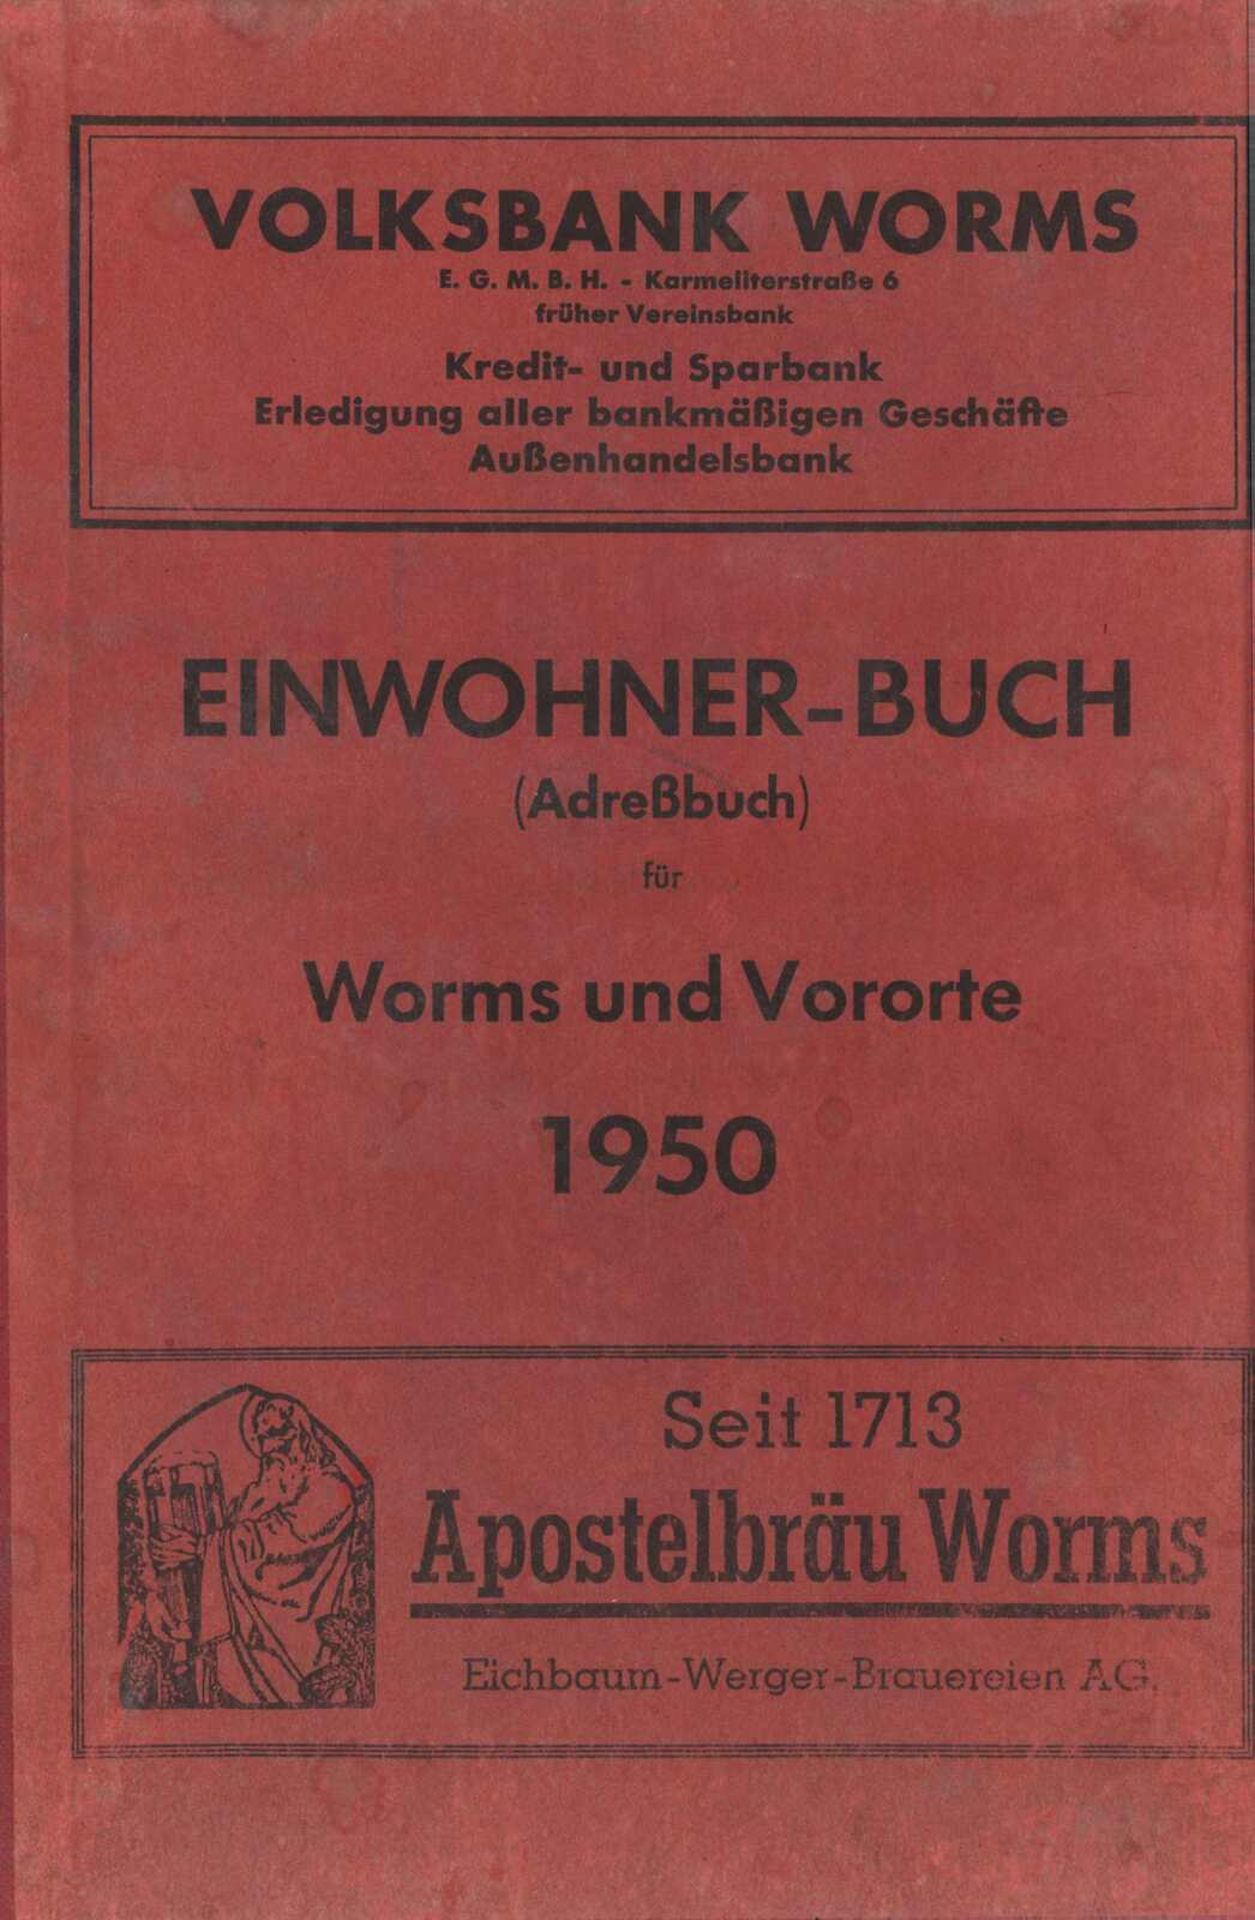 Einwohner Adressbuch Worms und Vororte 1950. 344 Seiten. Alter- und Gebrauchsspuren, sonst gut.